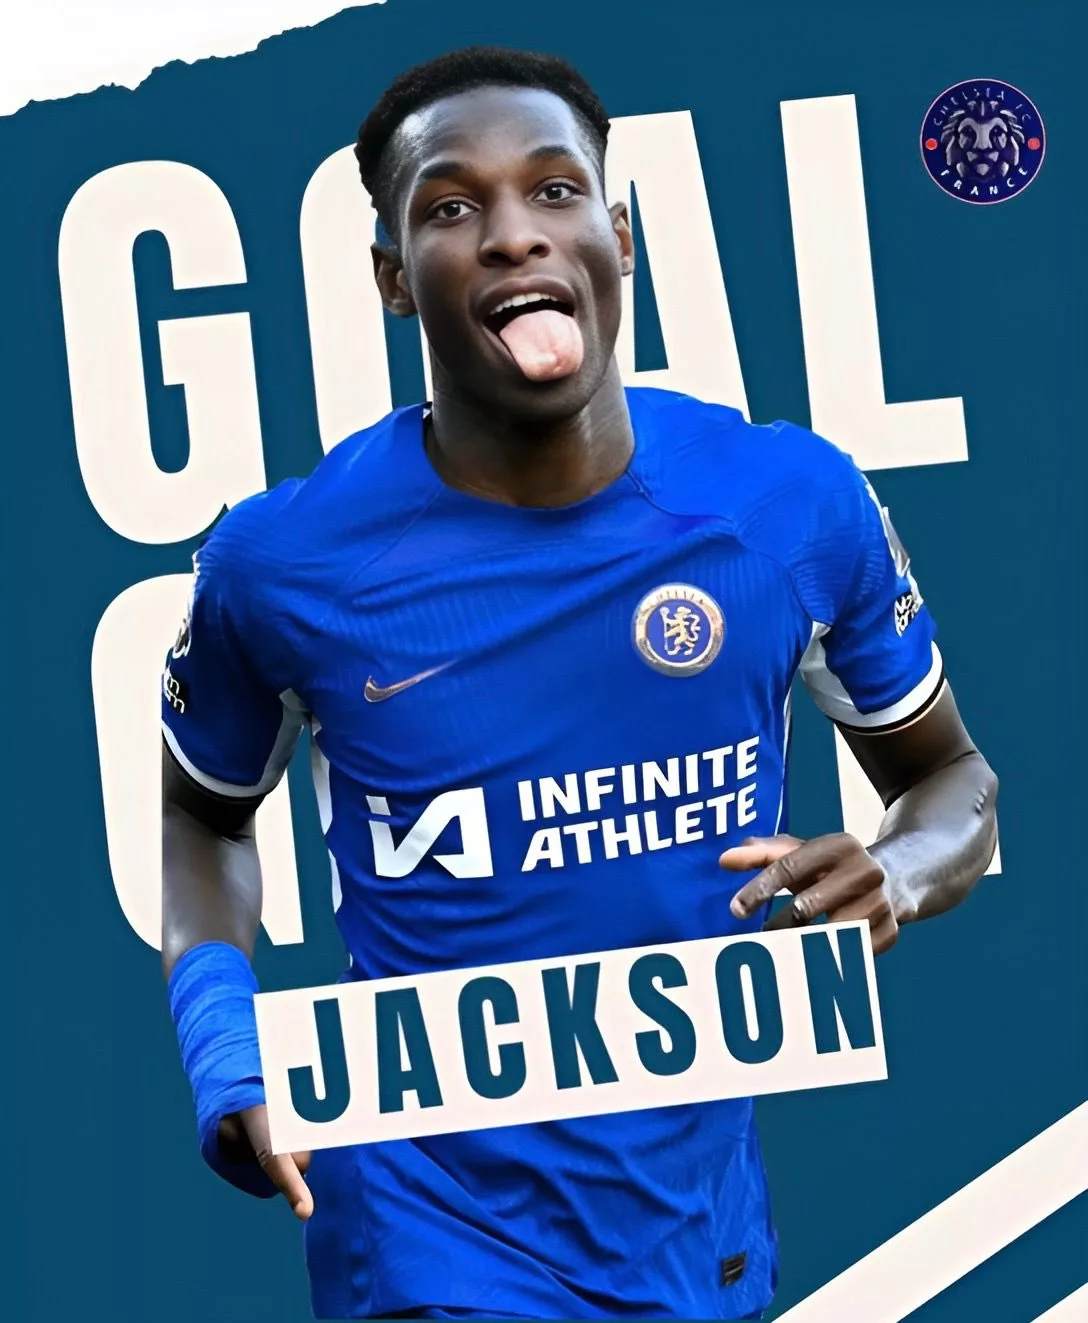 Chelsea : Et de 8 pour Jackson en Premier League